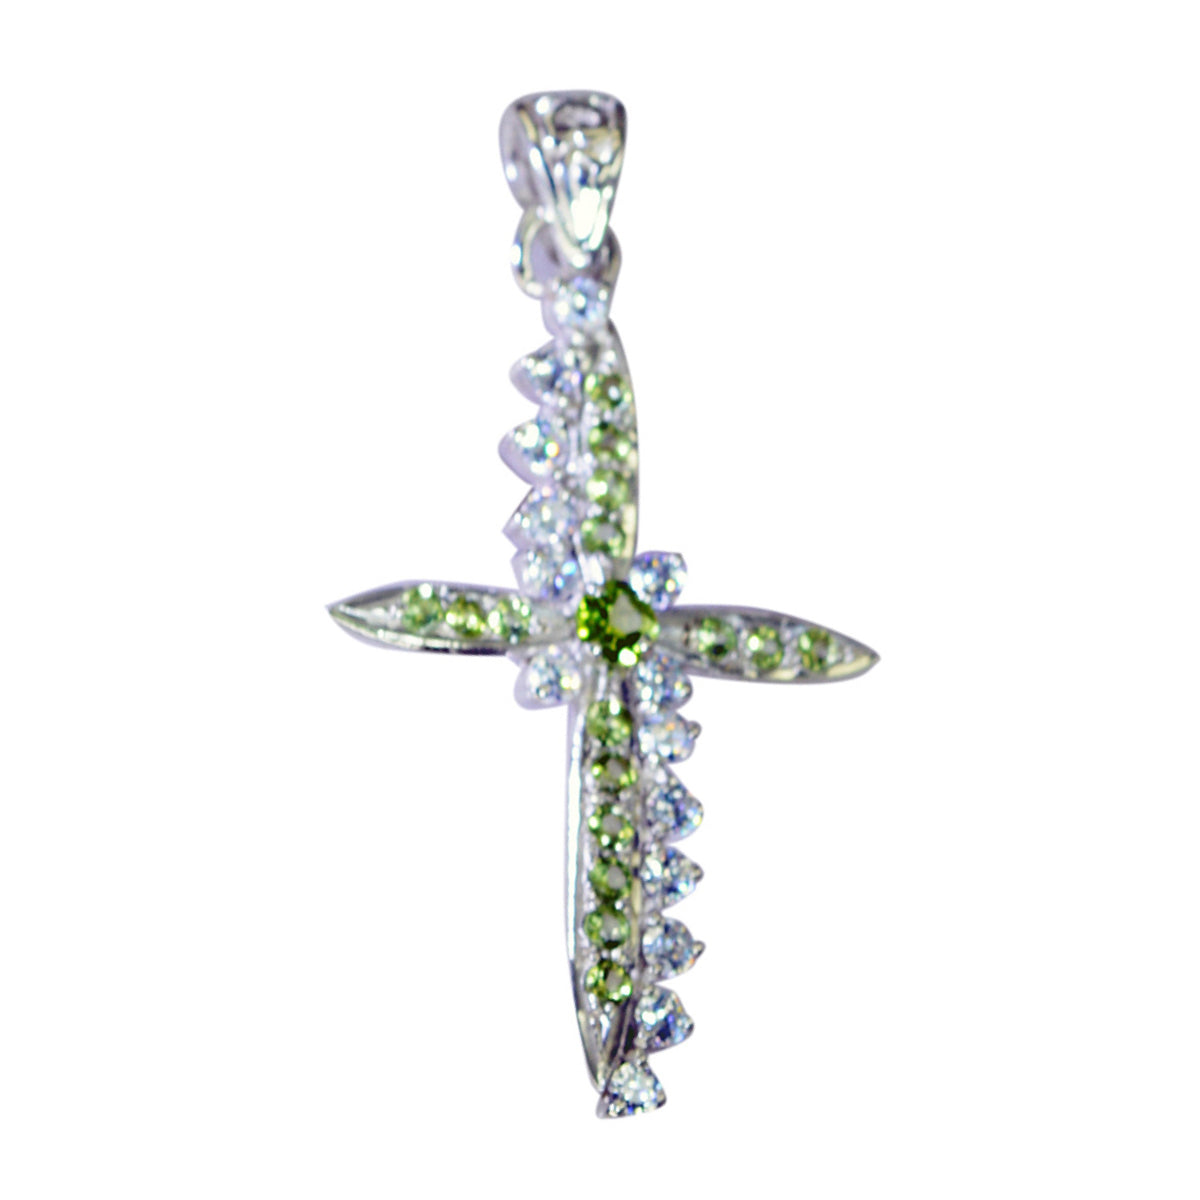 Riyo Ravishing Gems runder facettierter grüner Peridot-Silberanhänger als Geschenk zum zweiten Weihnachtsfeiertag